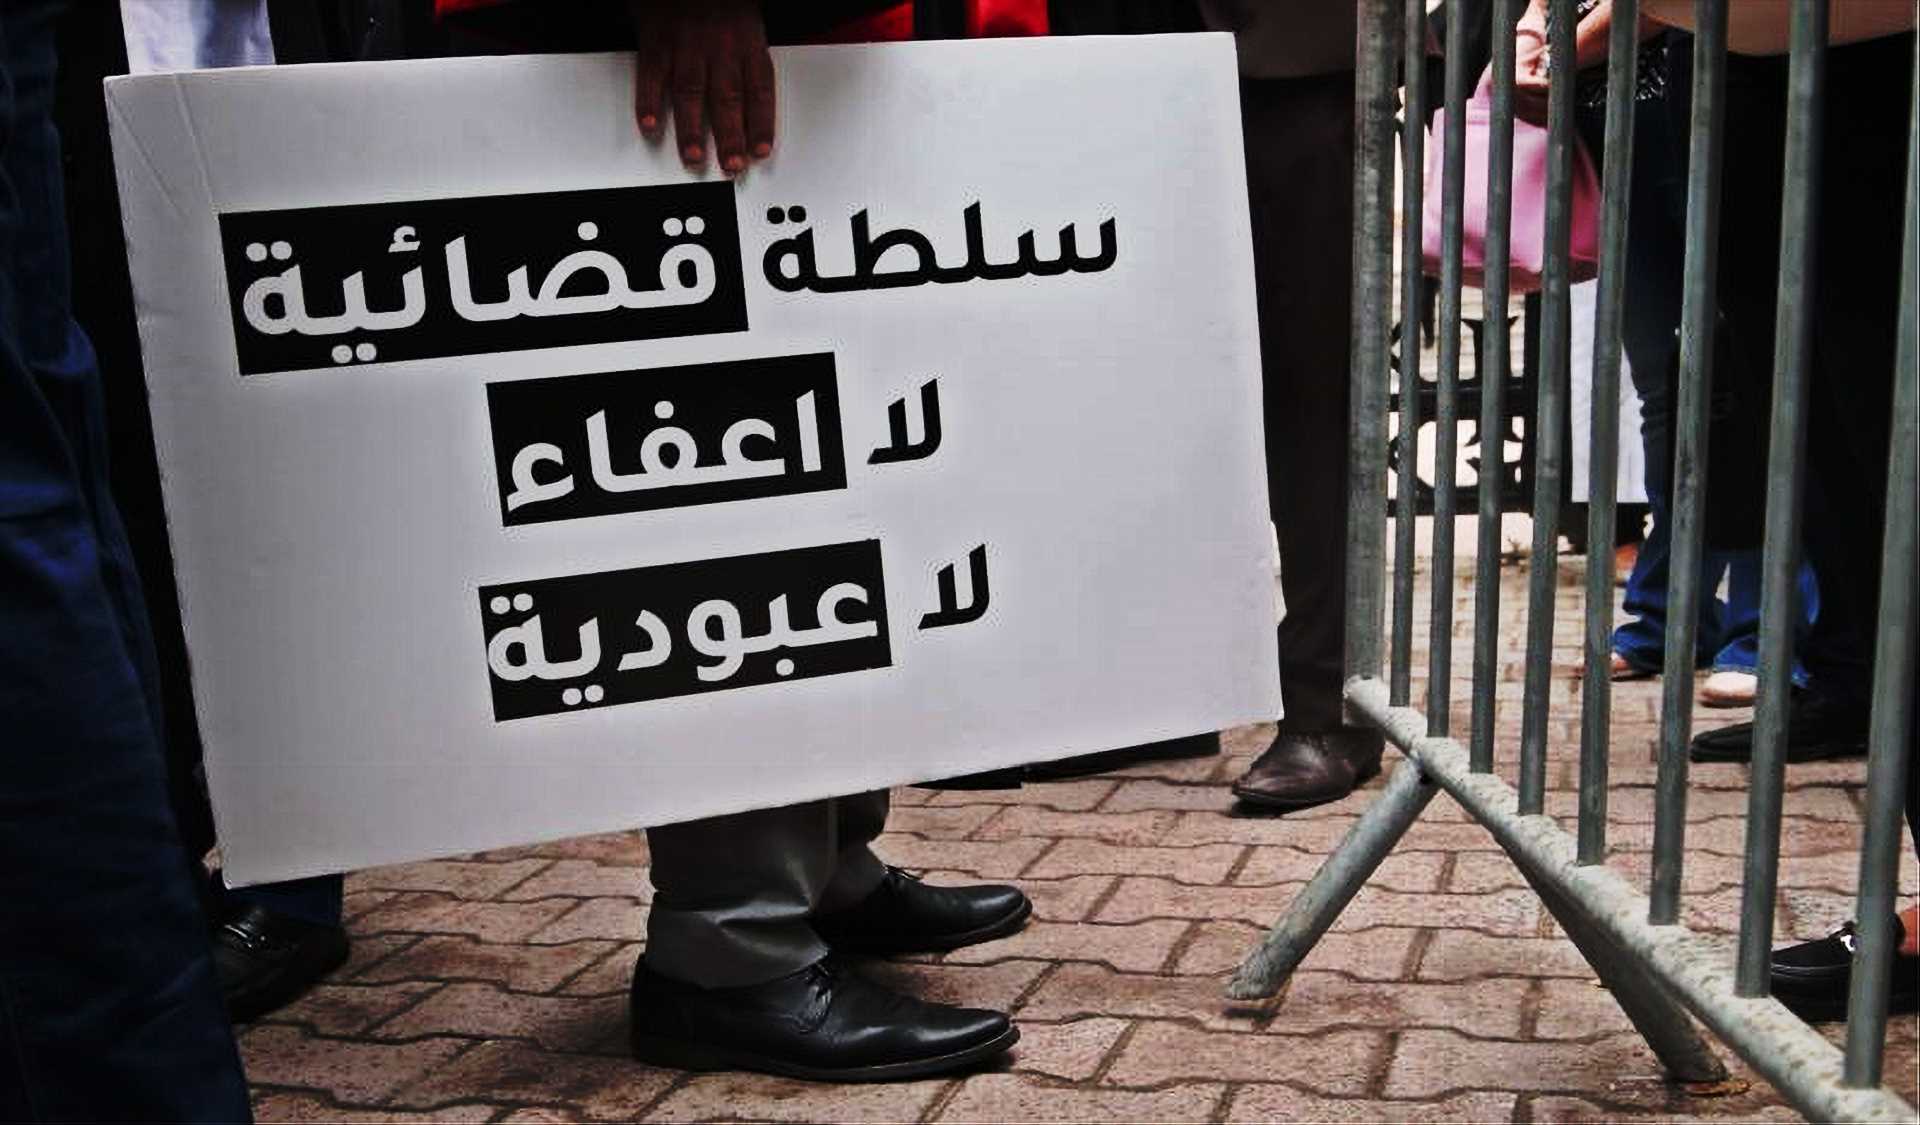 المحنة المستمرّة: وزيرة العدل في تونس تحكم وتسود القضاء المعتلّ